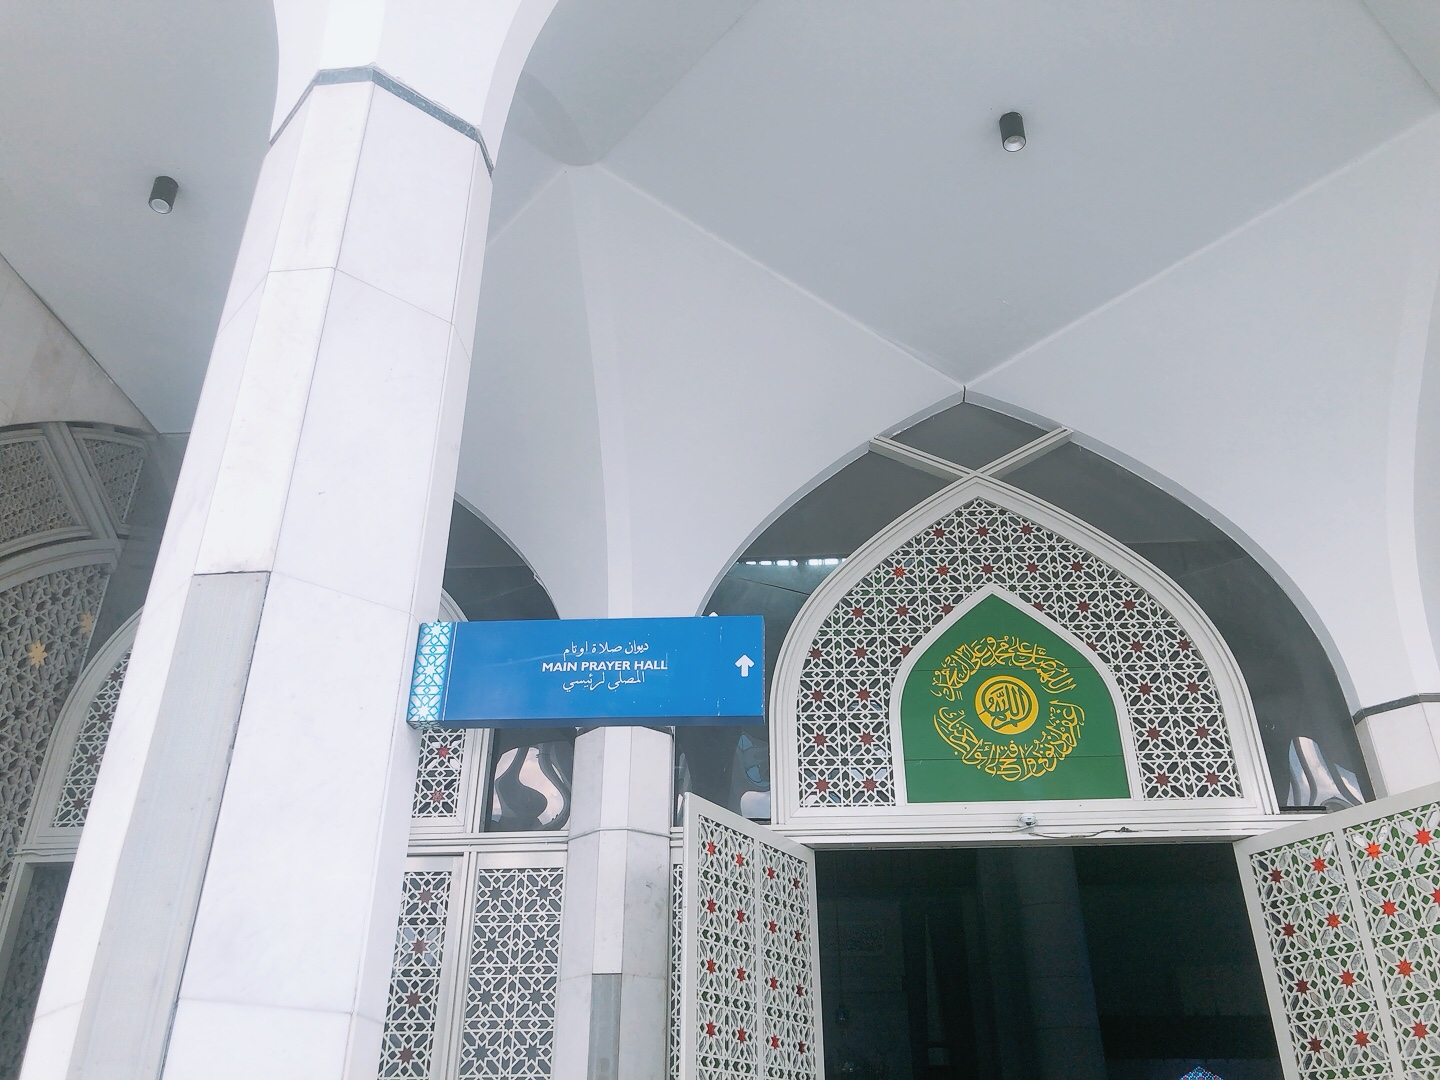 藍色清真寺 馬來西亞 Main prayer hall 祈禱廳